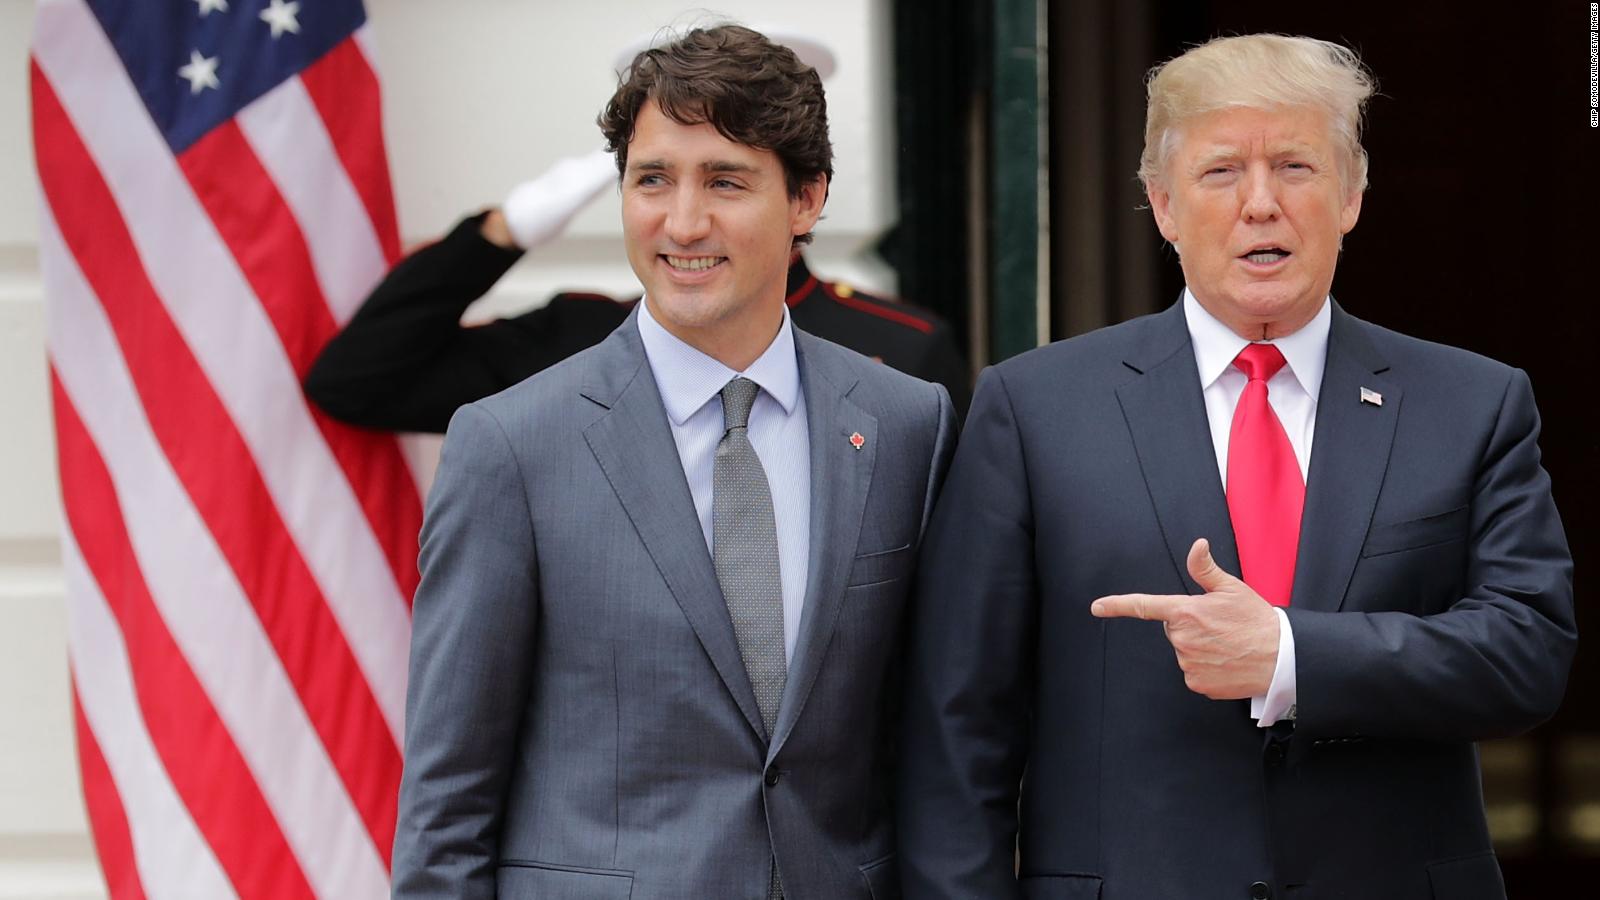 Las contradictoras cifras que cita Trump sobre Canadá